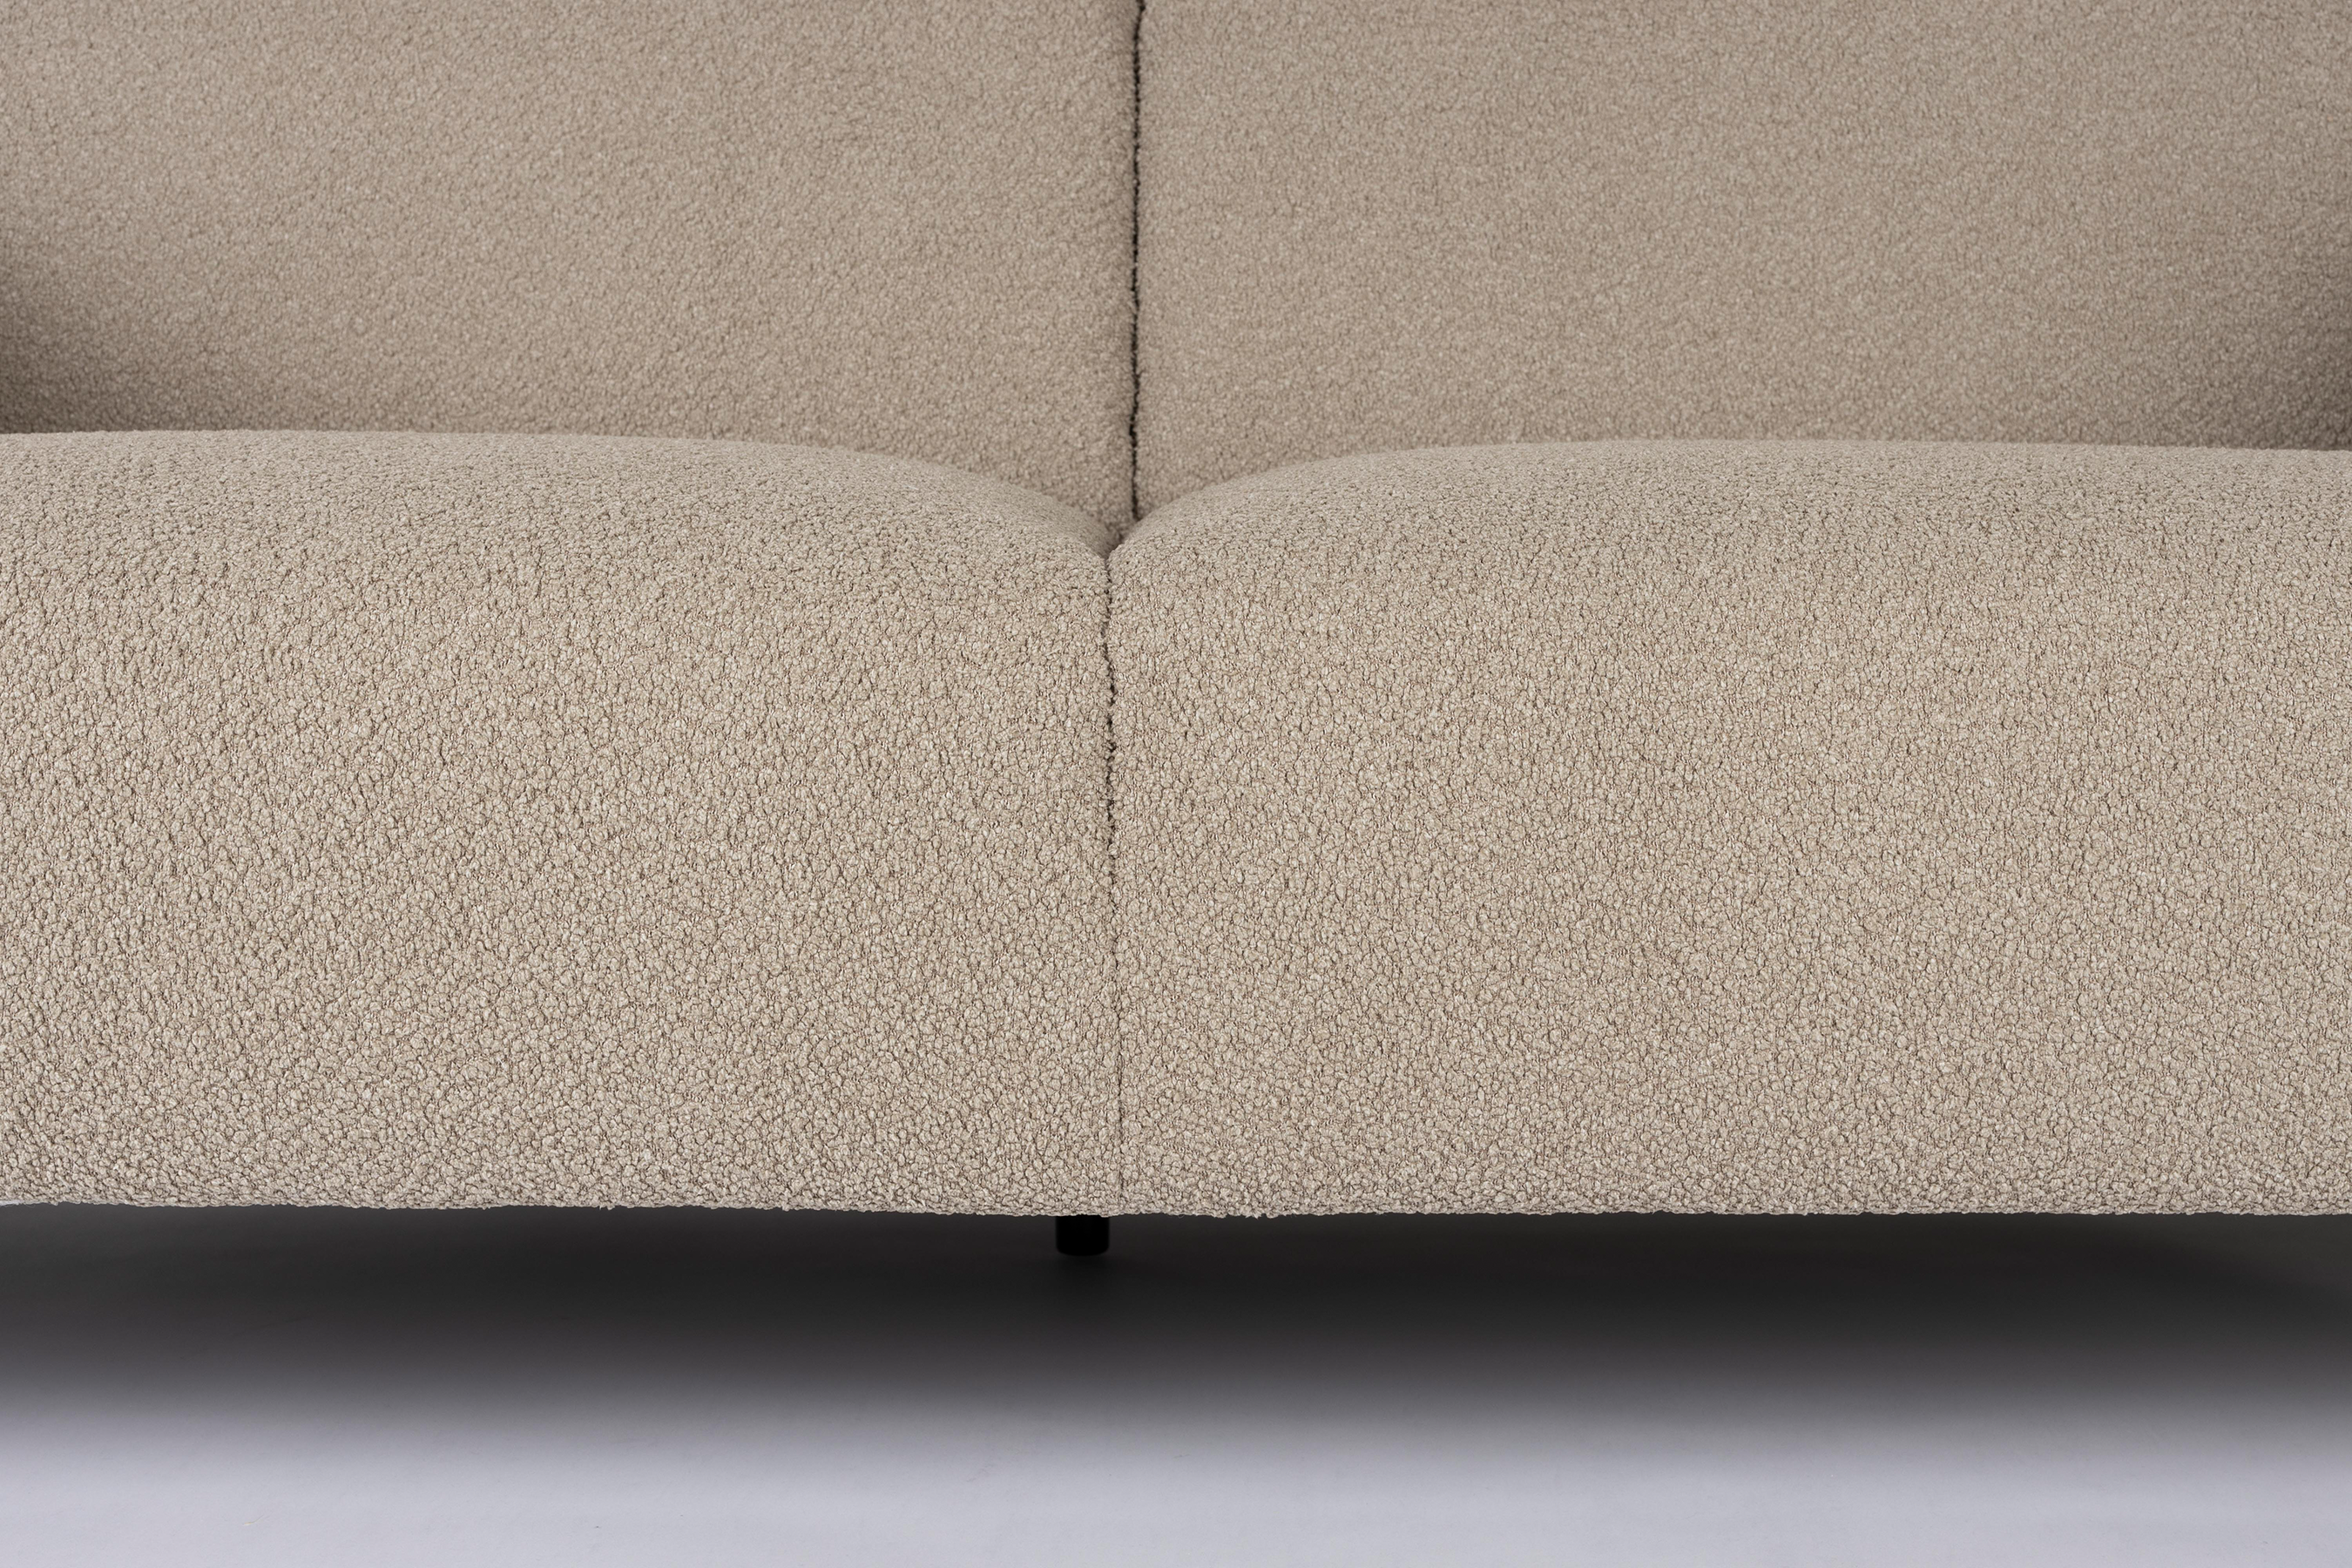 Sofa Sylvia 2.5 Sitzer in Sand präsentiert im Onlineshop von KAQTU Design AG. 2er Sofa ist von White Label Living